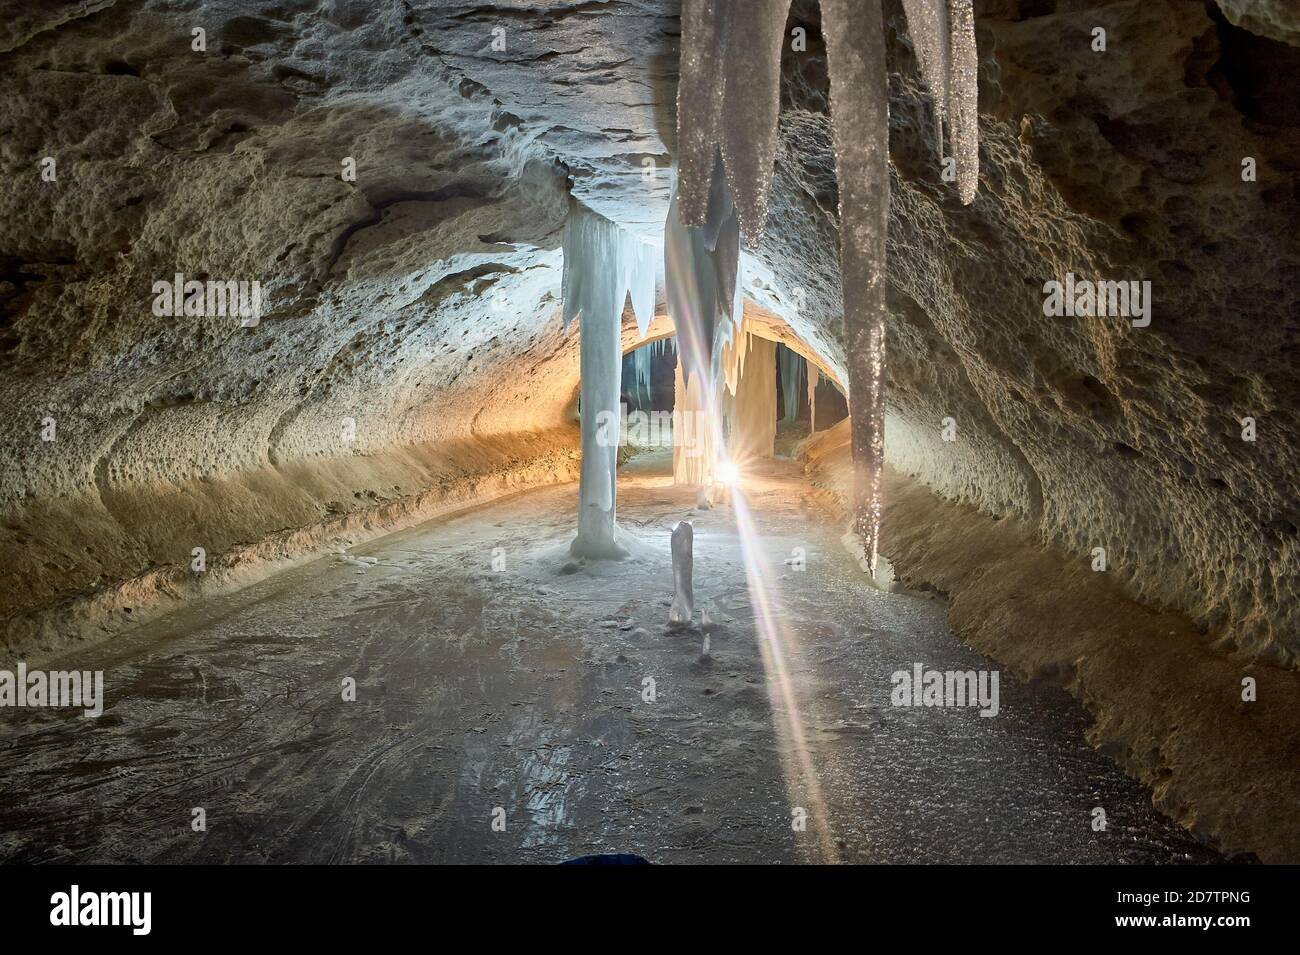 Почему в пещерах холодно. Пинежские пещеры Архангельская область.